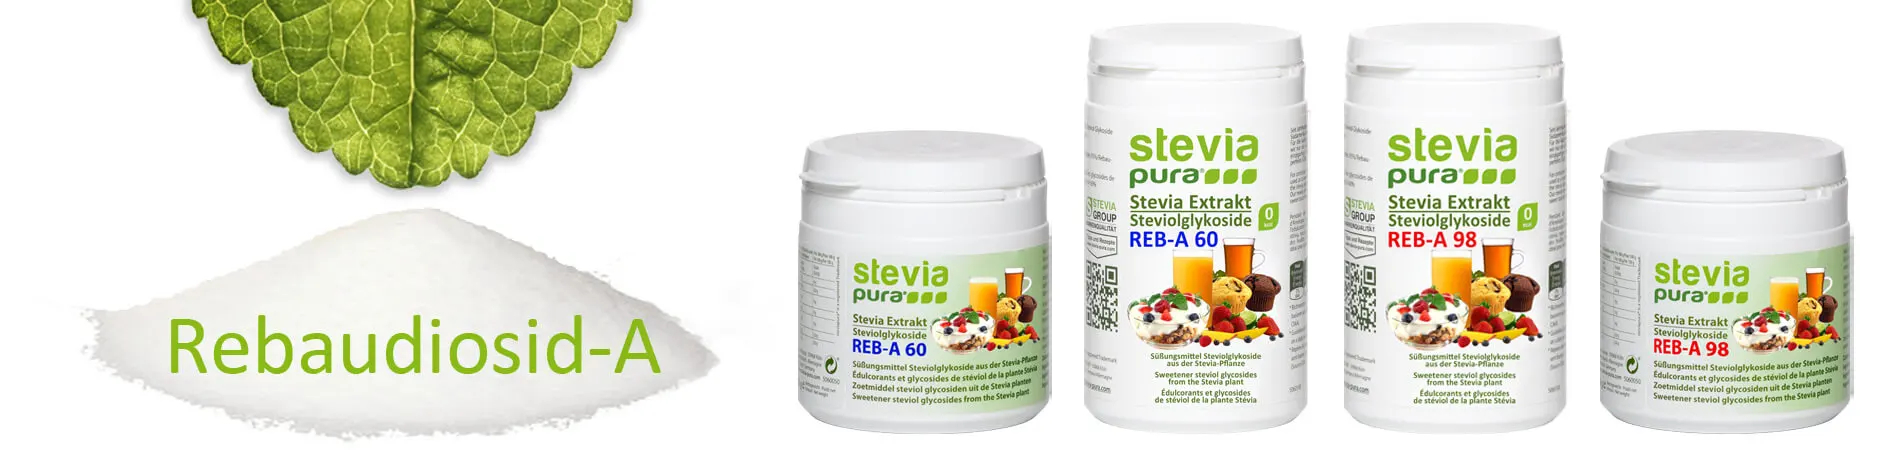 Rebaudiósido-A: Glicósidos de esteviol puros de Stevia en polvo